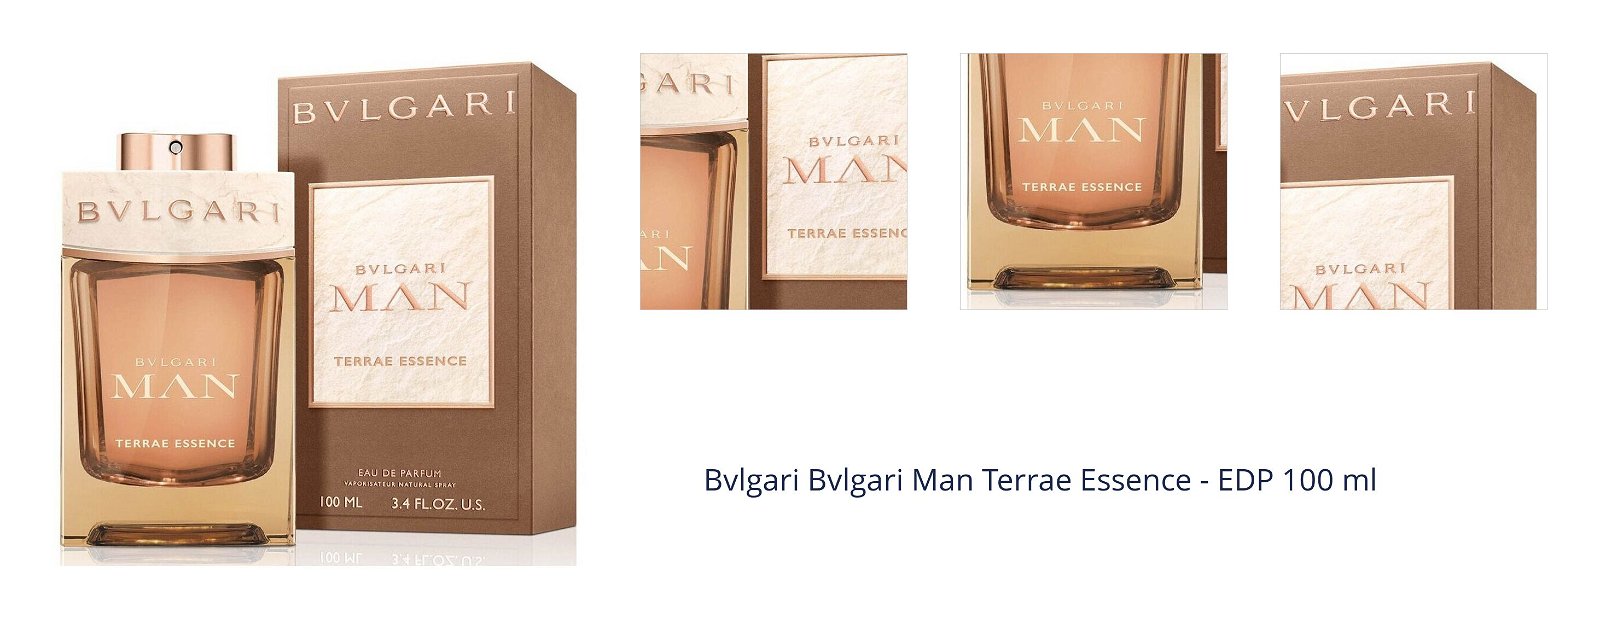 Bvlgari Bvlgari Man Terrae Essence - EDP 100 ml 7